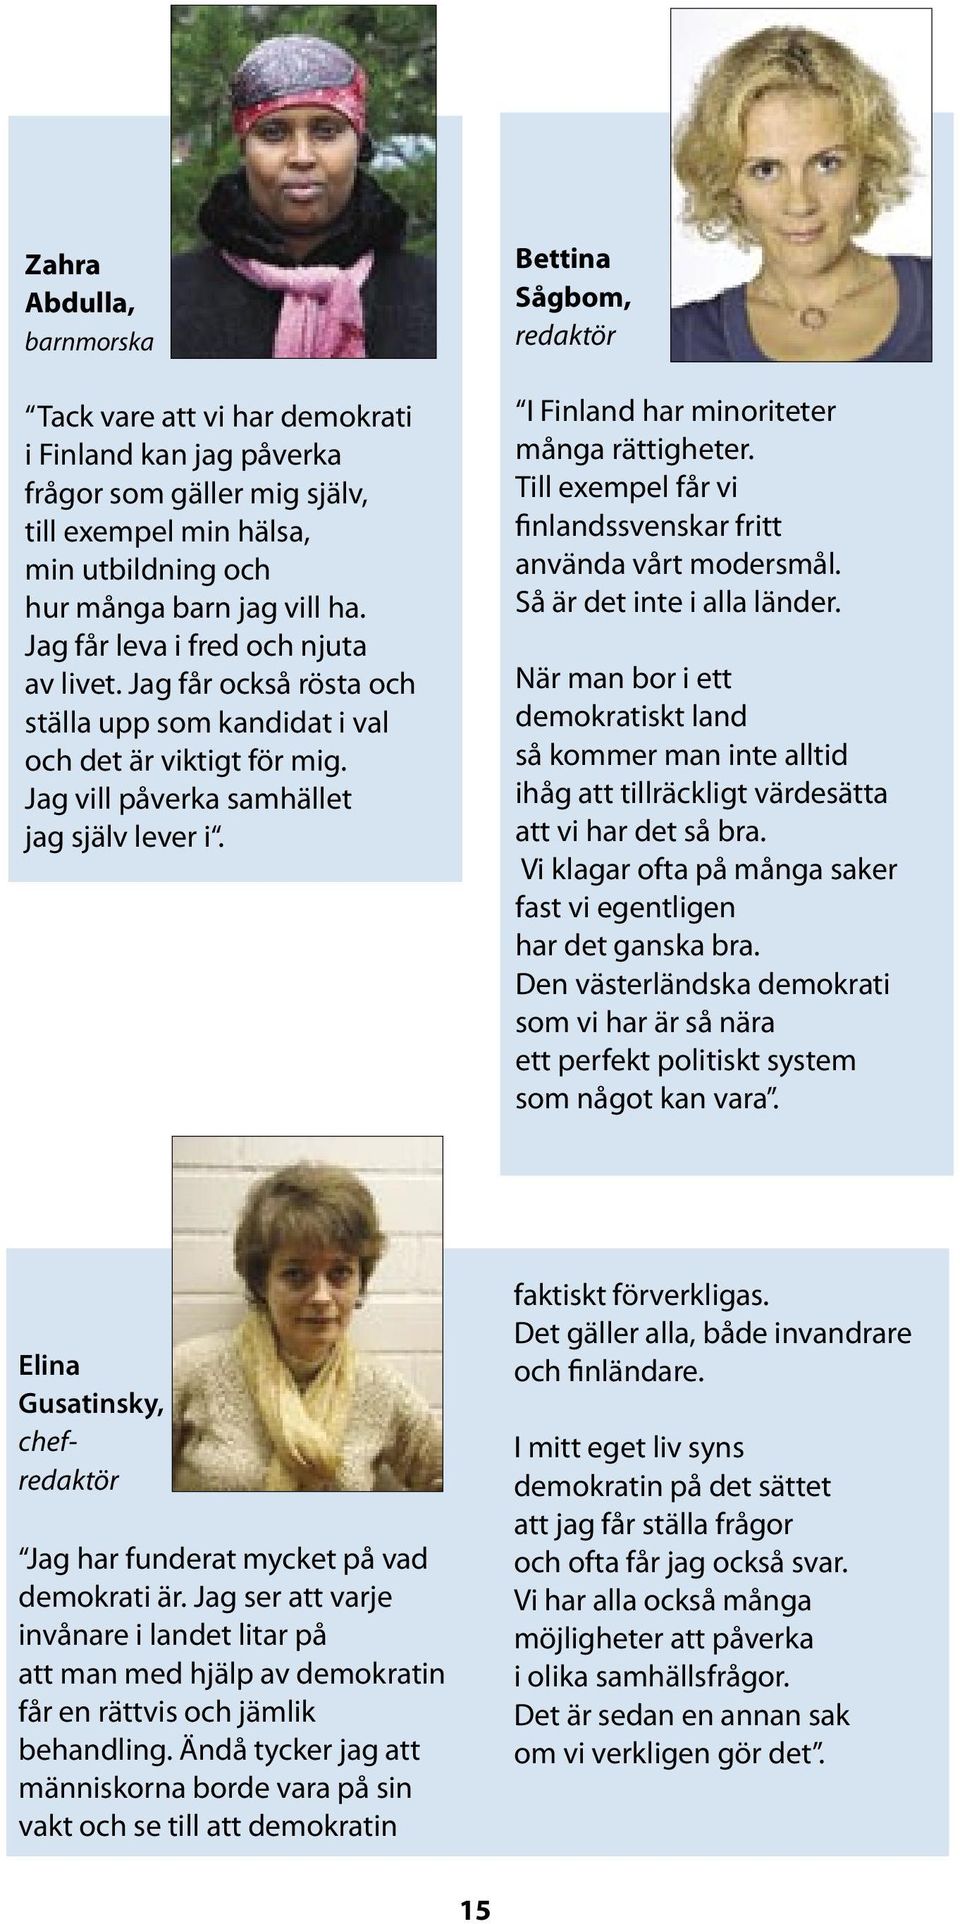 Bettina Sågbom, redaktör I Finland har minoriteter många rättigheter. Till exempel får vi finlandssvenskar fritt använda vårt modersmål. Så är det inte i alla länder.